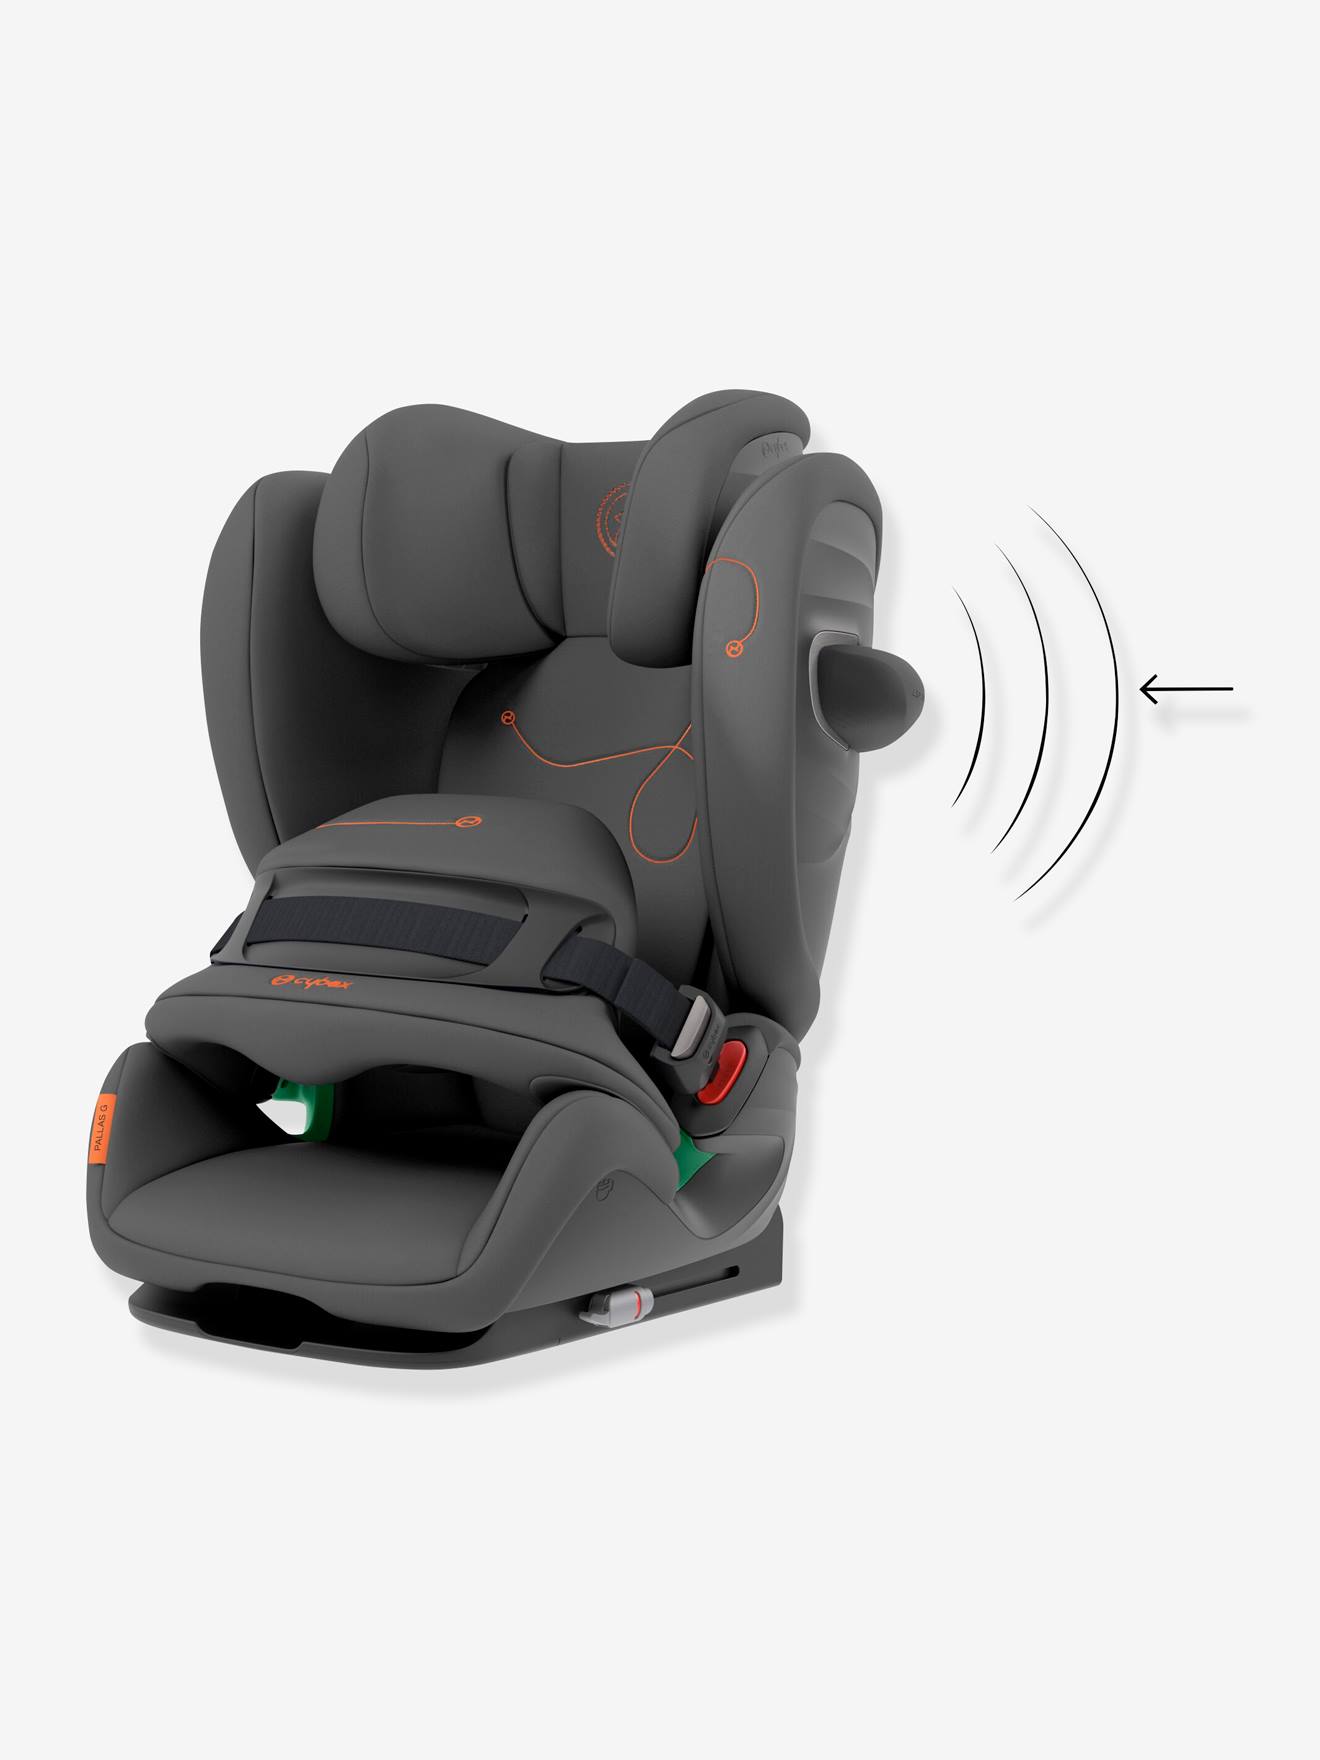 Le bon choix - siège auto cybex isofix neuf disponible